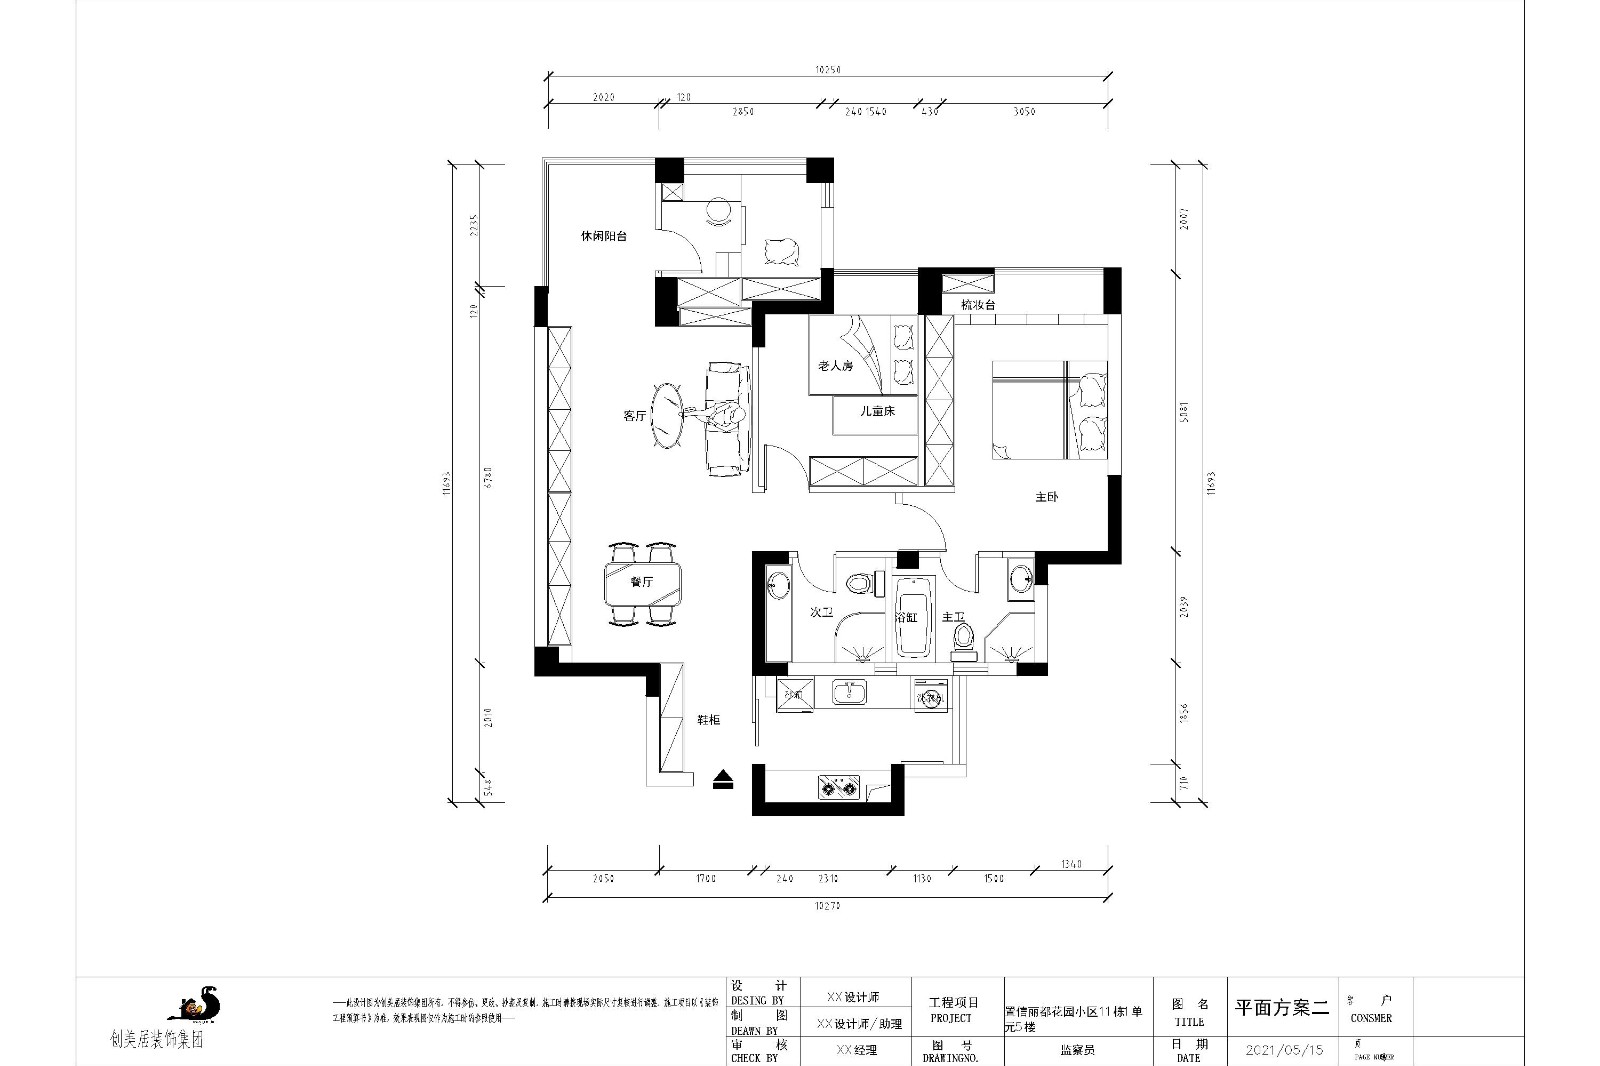 100现代三房装修效果图,现代简约装修案例效果图-美广网(图1)